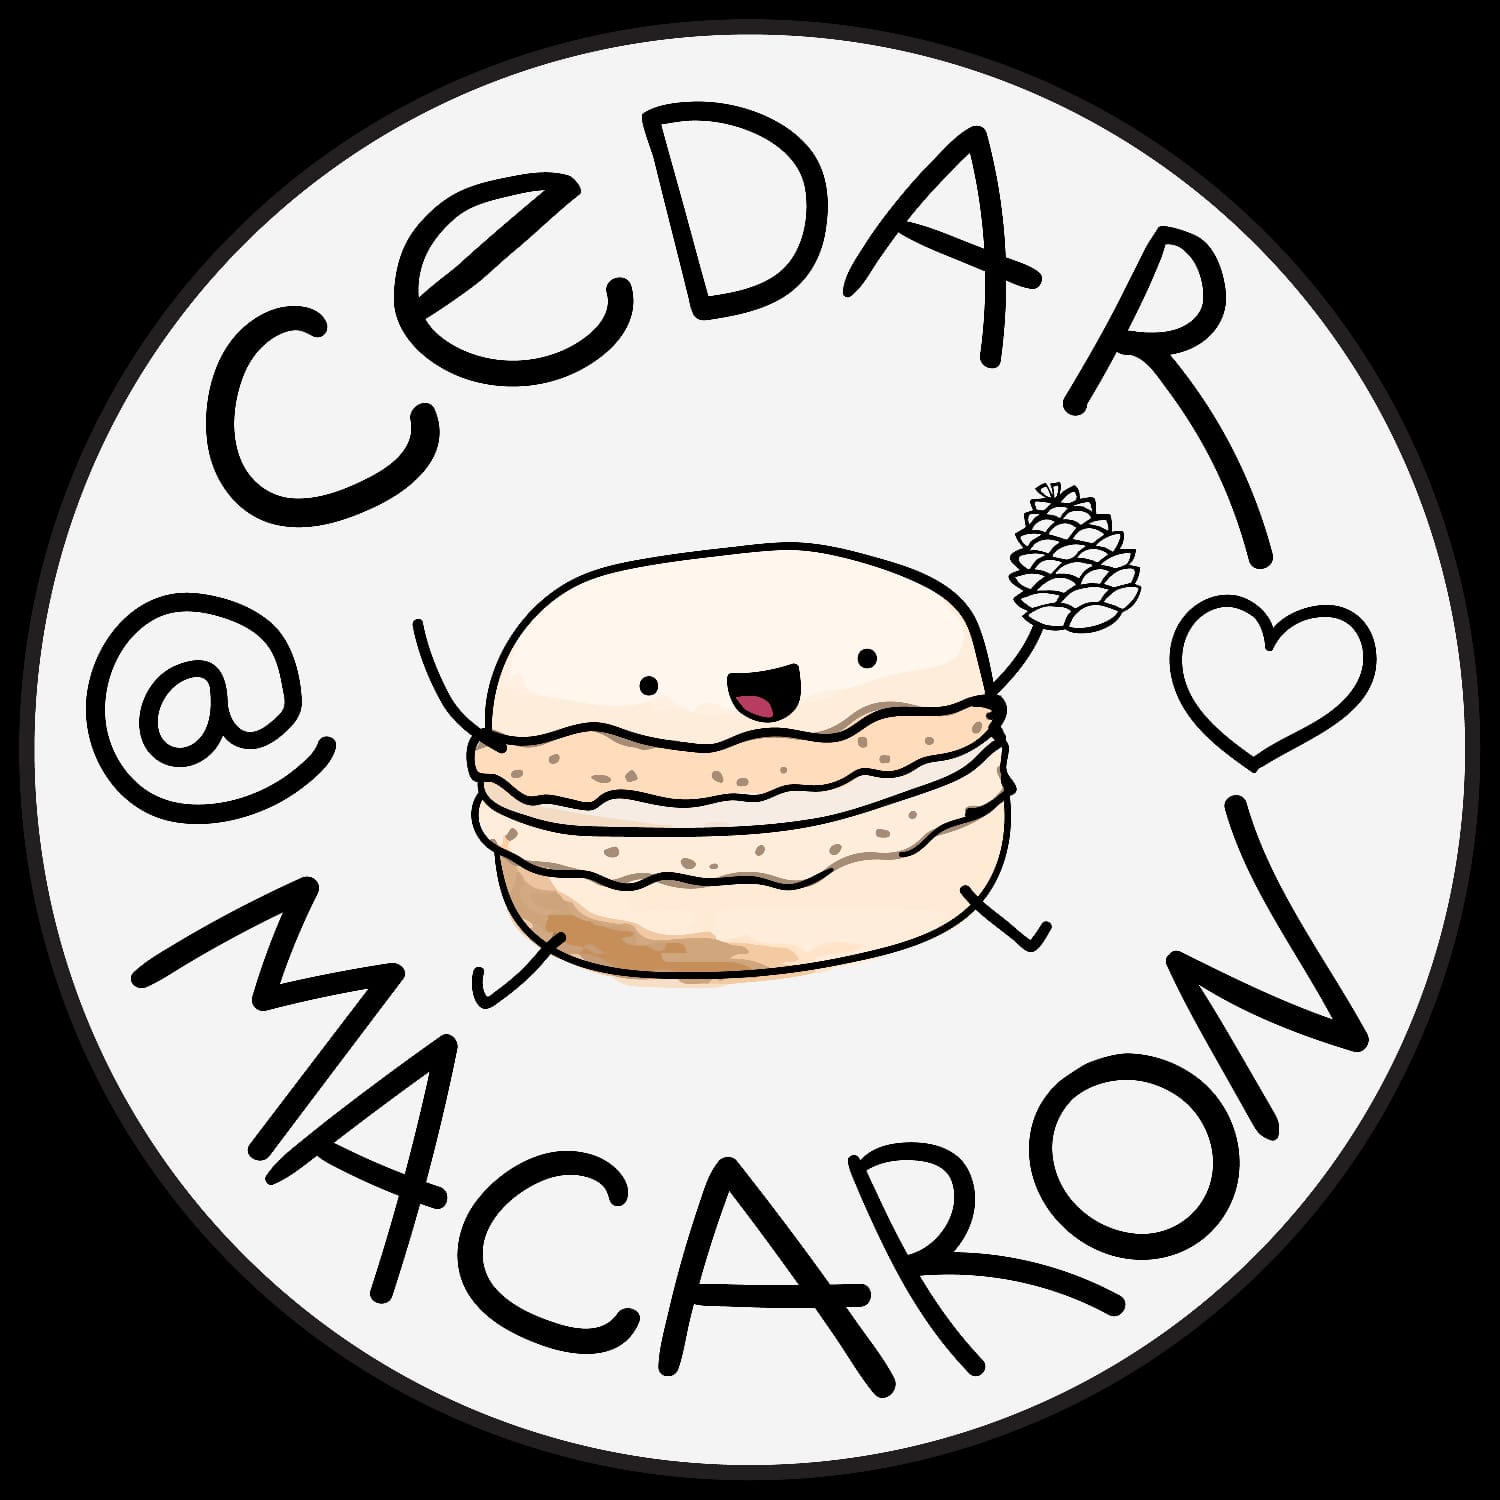 Cedar Macaron